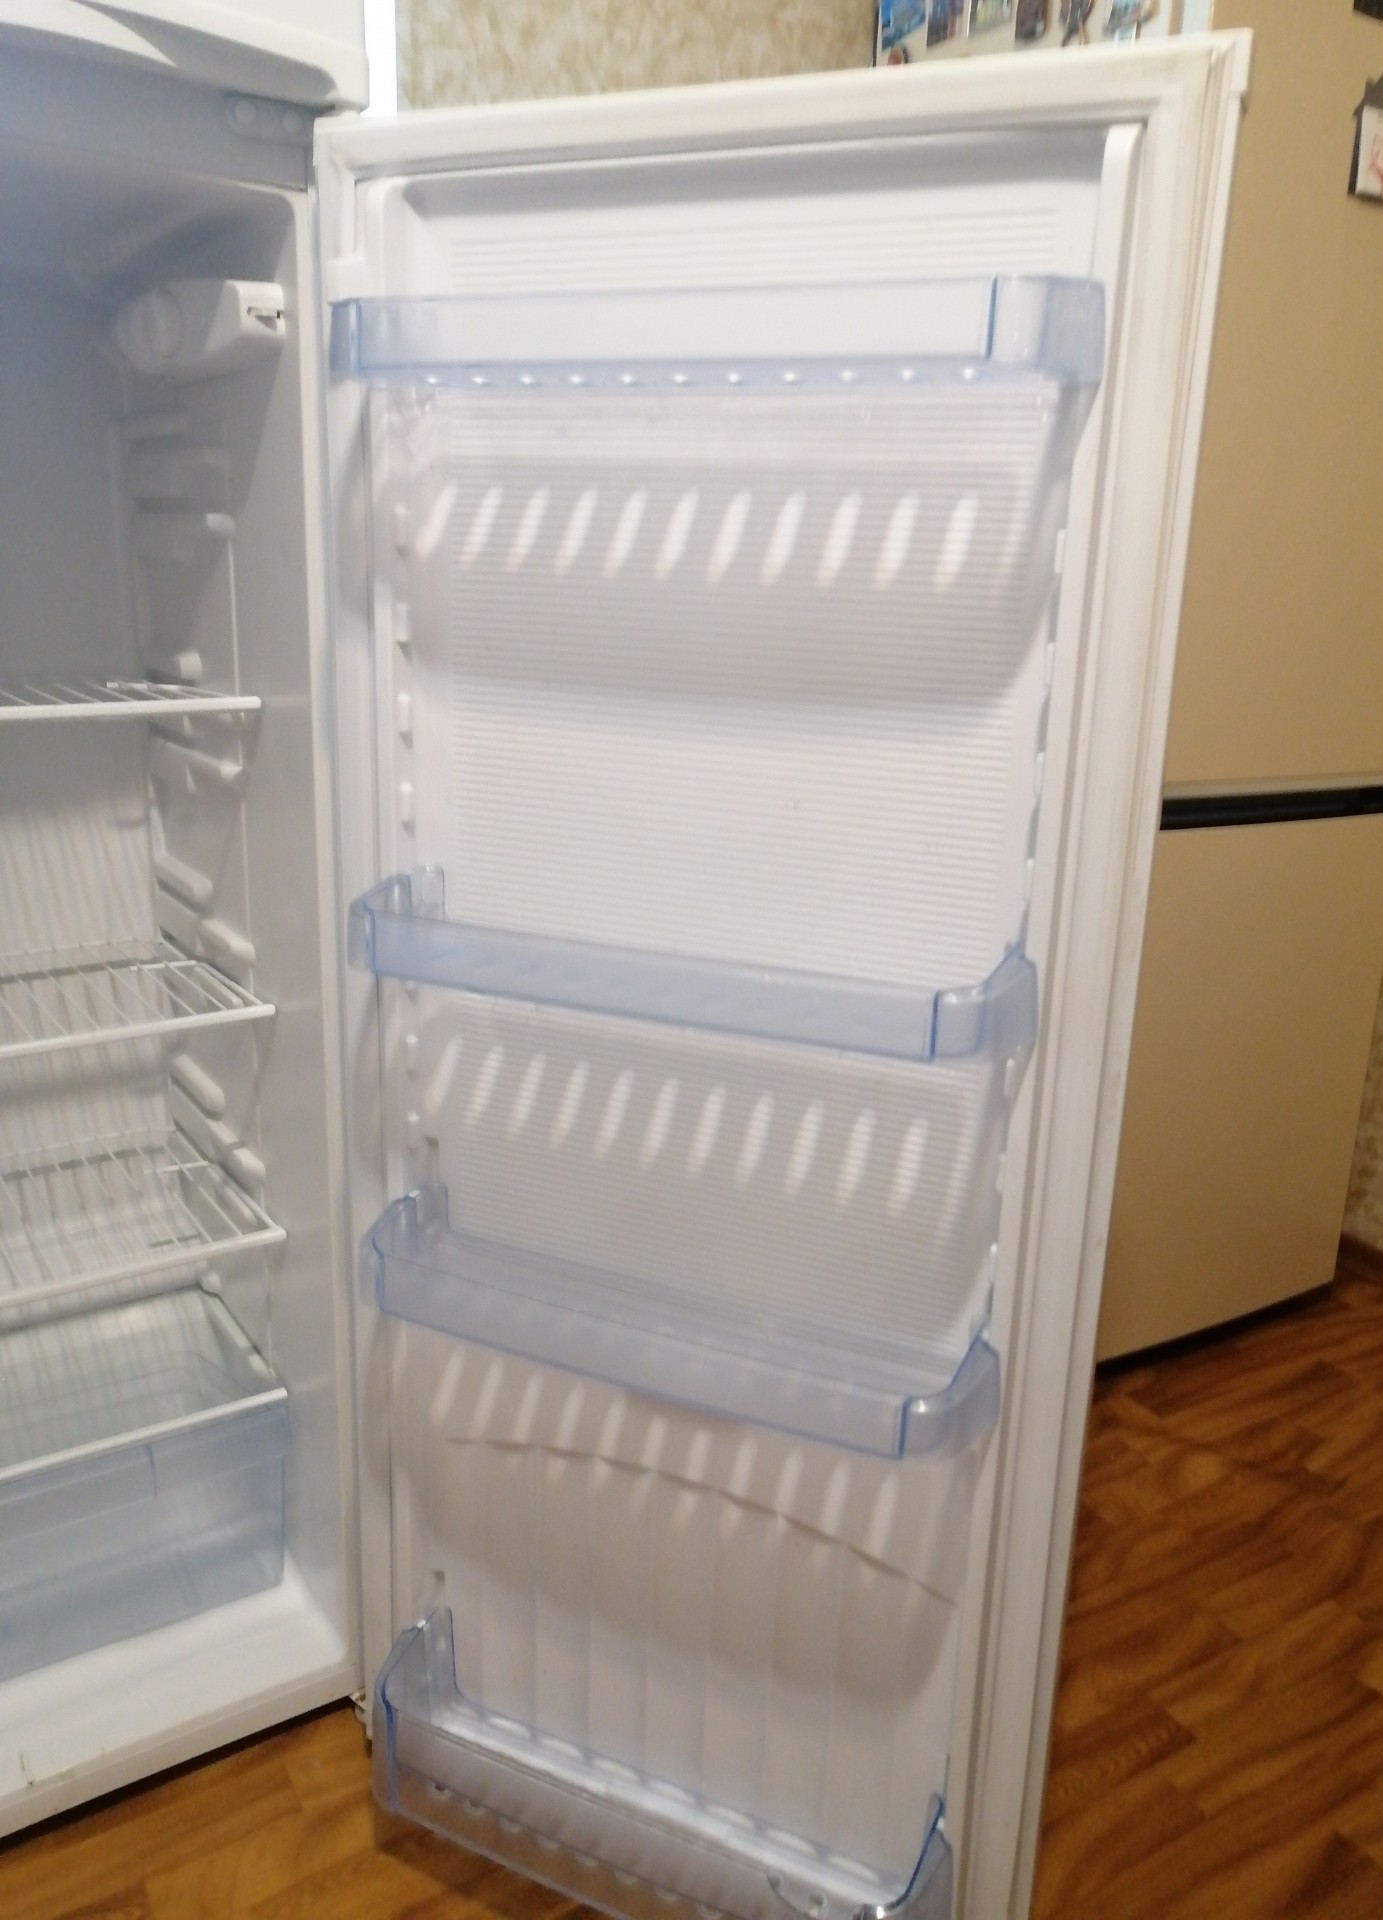 Холодильник Днепр ДХ-416-7-010 -. Днепр 2мс холодильник. Холодильник Днепр вес кг. Холодильник Днепр внутри. Как менялся холодильник